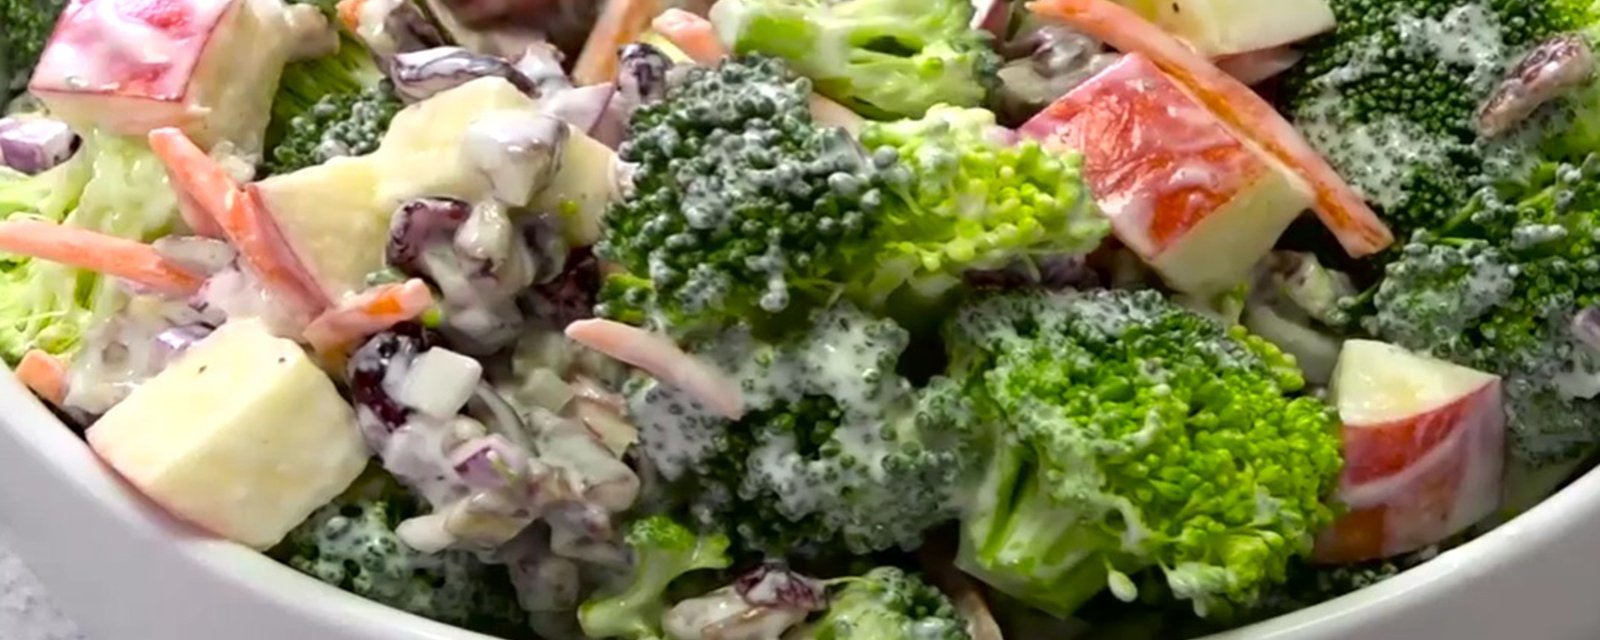 Une salade dont on ne se lasse jamais... Brocoli, pommes et pacanes